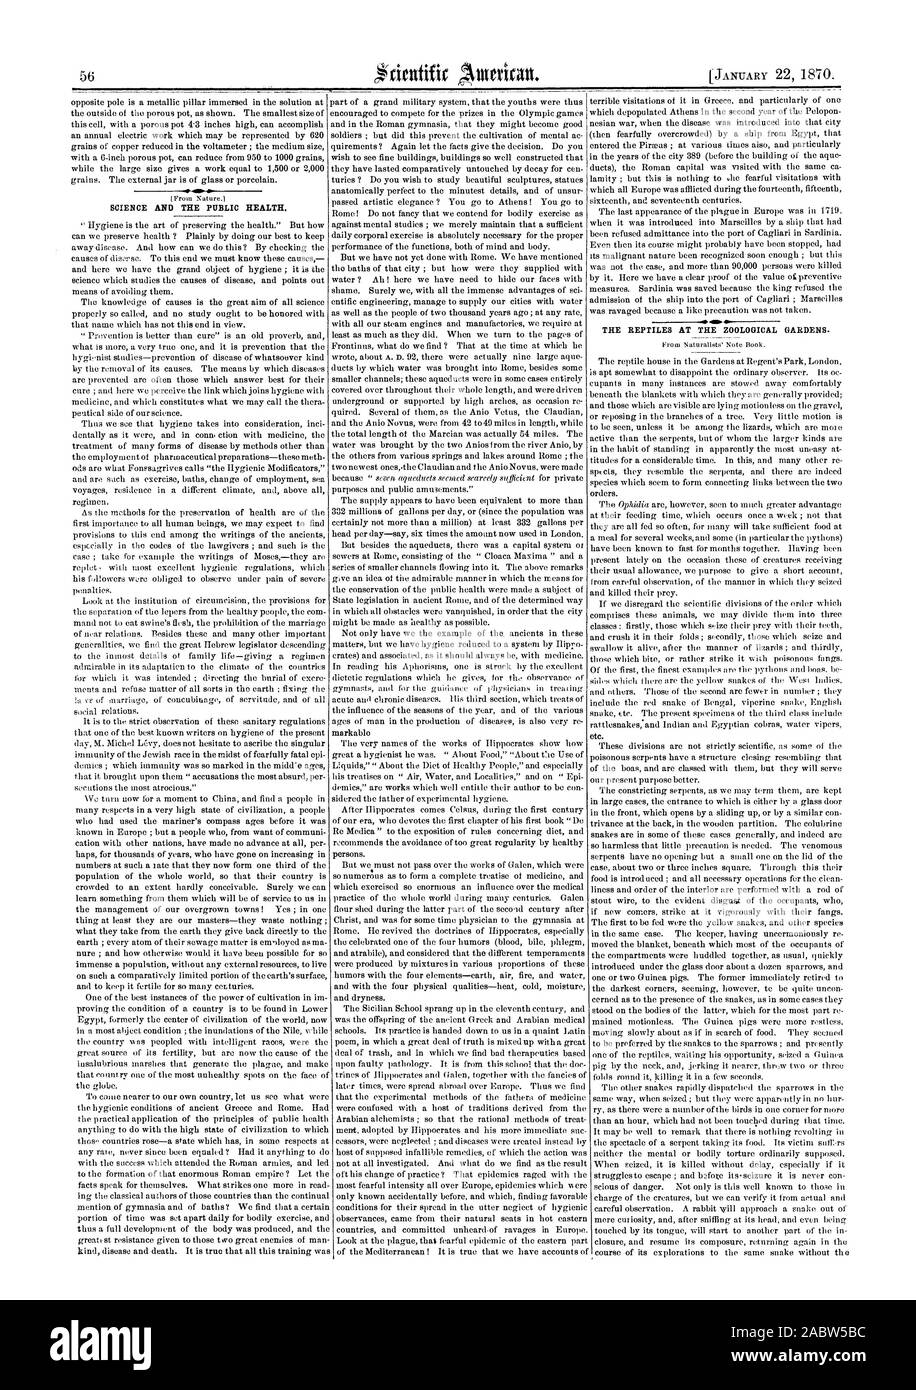 Die WISSENSCHAFT UND DIE ÖFFENTLICHE GESUNDHEIT. Die REPTILIEN AN DER zoologischen Gärten., Scientific American, 1870-01-22 Stockfoto